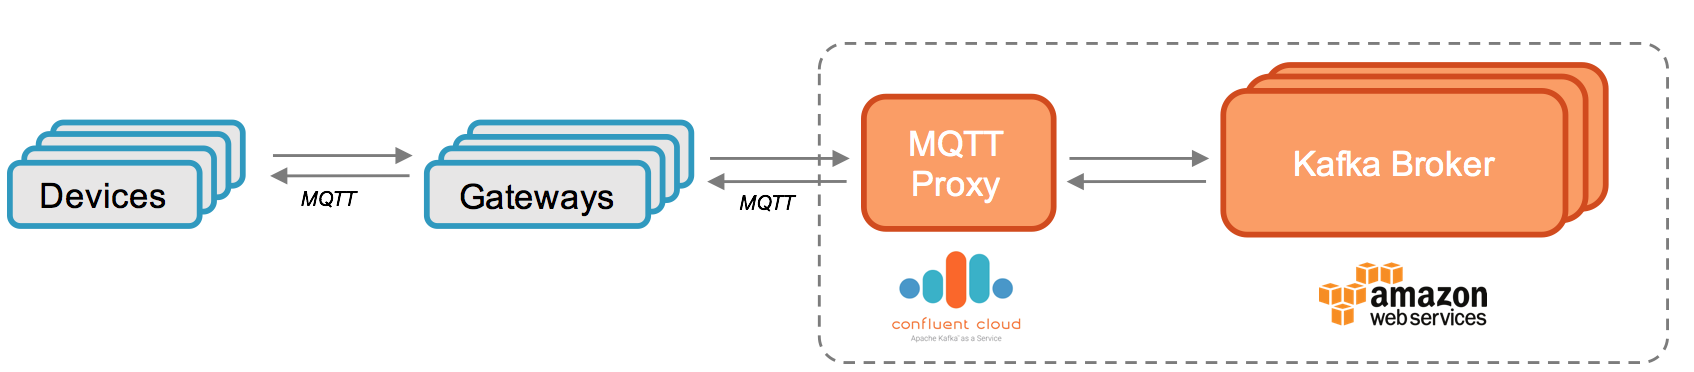 MQTT_Proxy_Confluent_Cloud.png